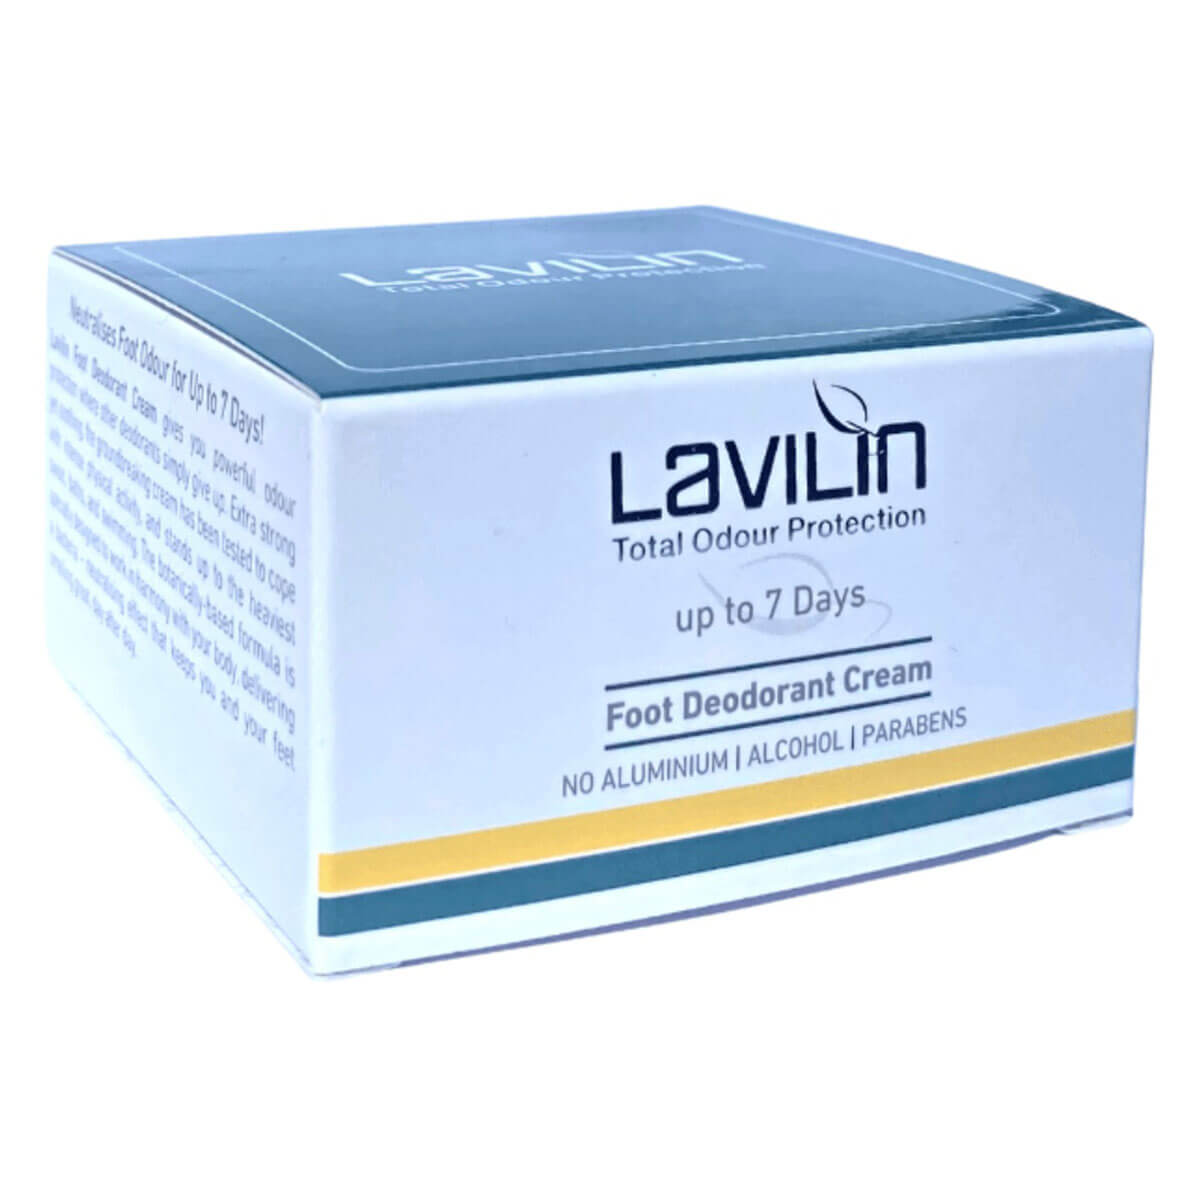 Foot Deodorant Cream - Lavilin